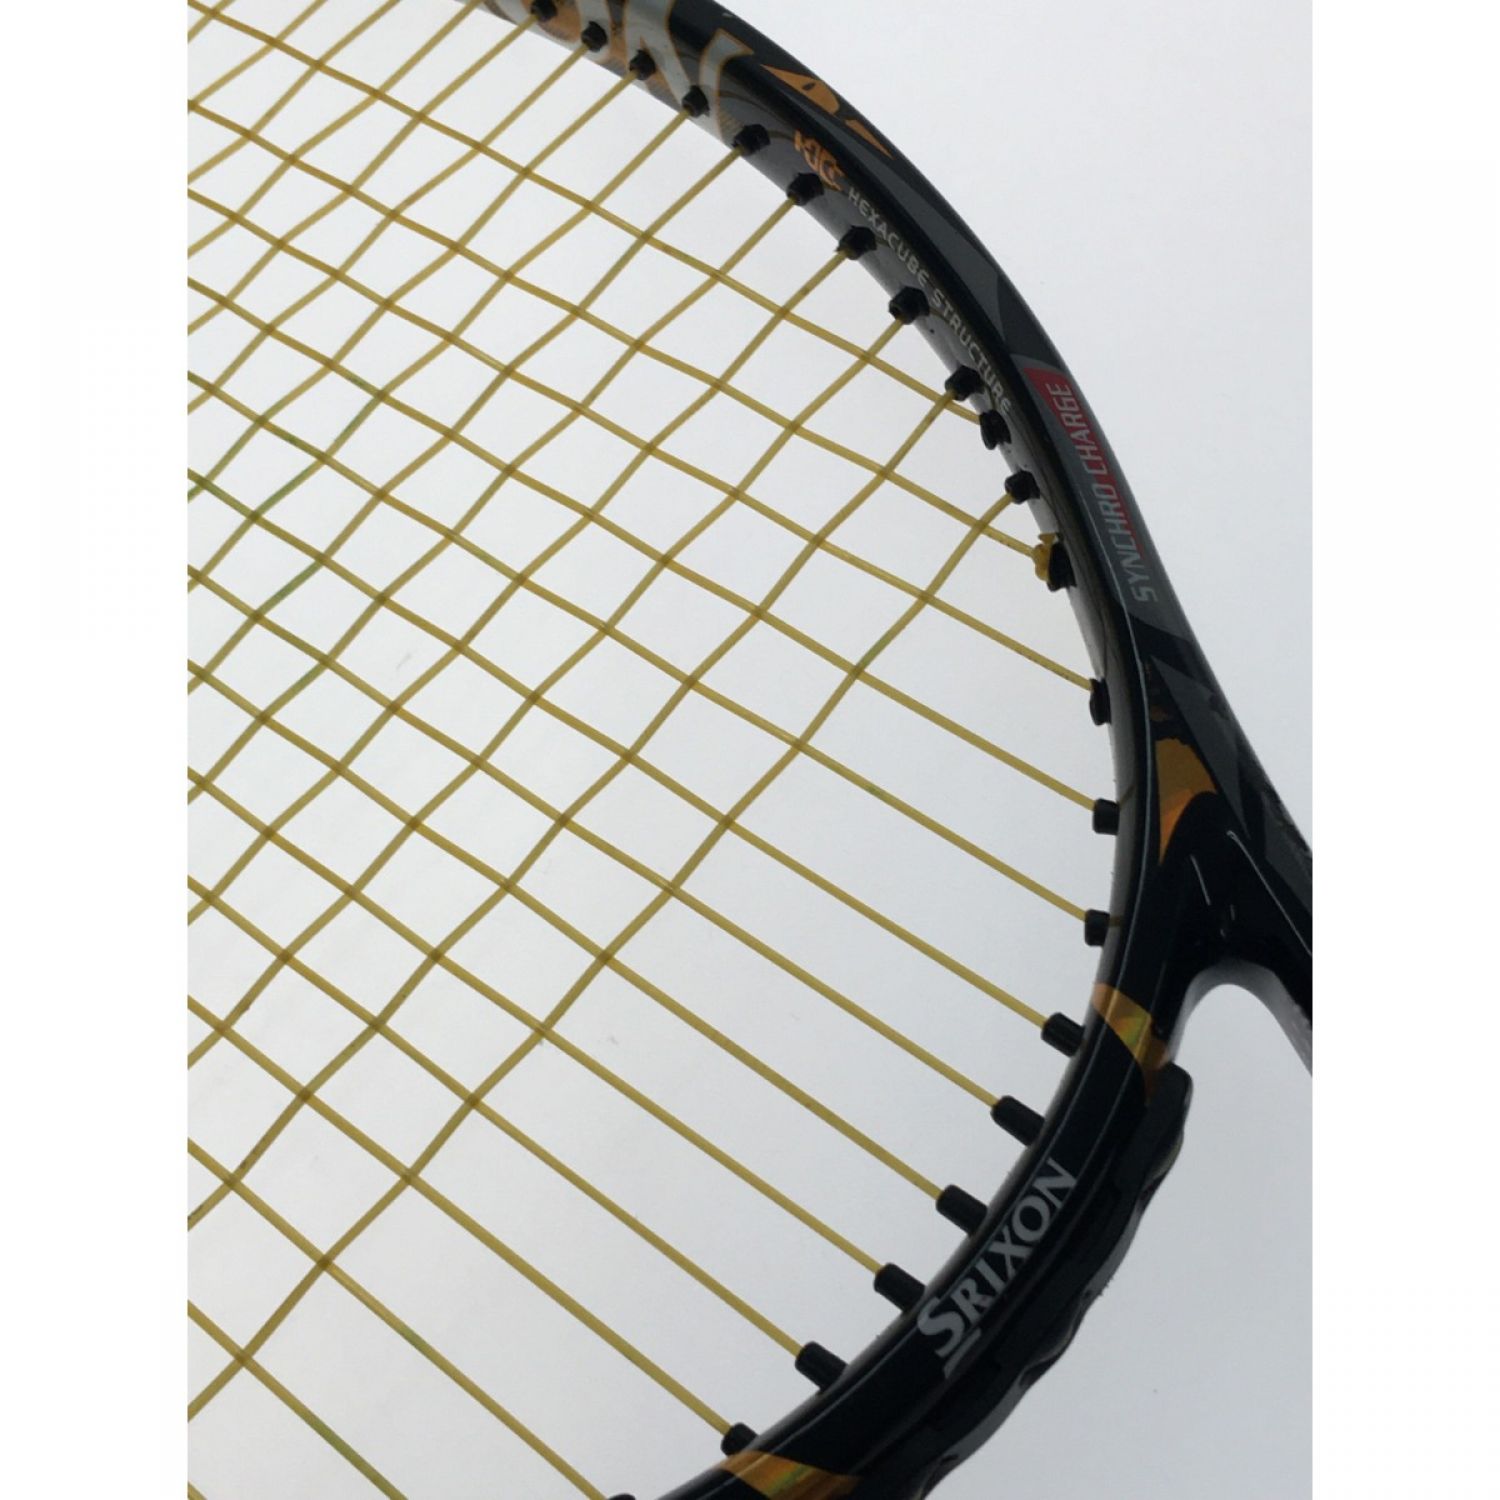 テニスラケット スリクソン 硬式 www.krzysztofbialy.com